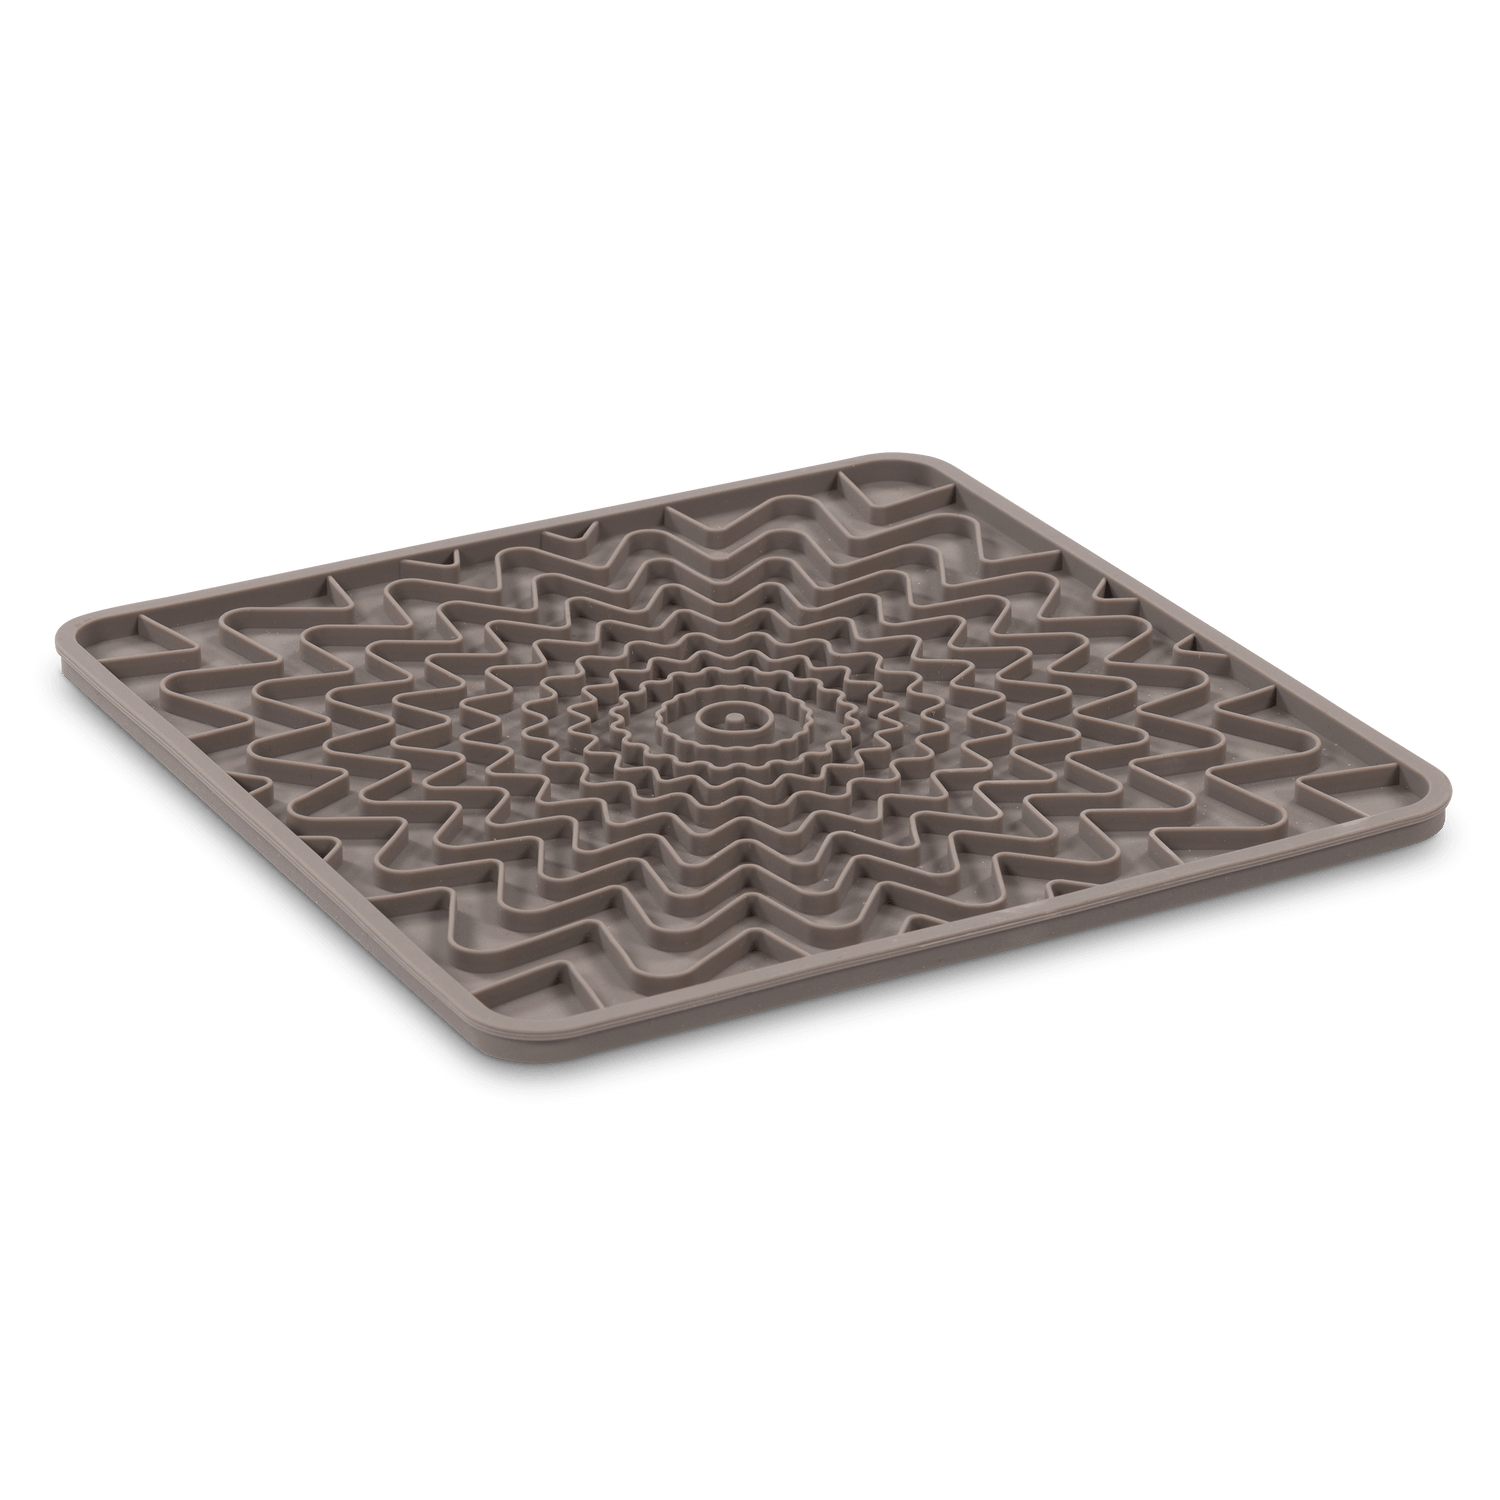 Interactive grey dog lick mat.  